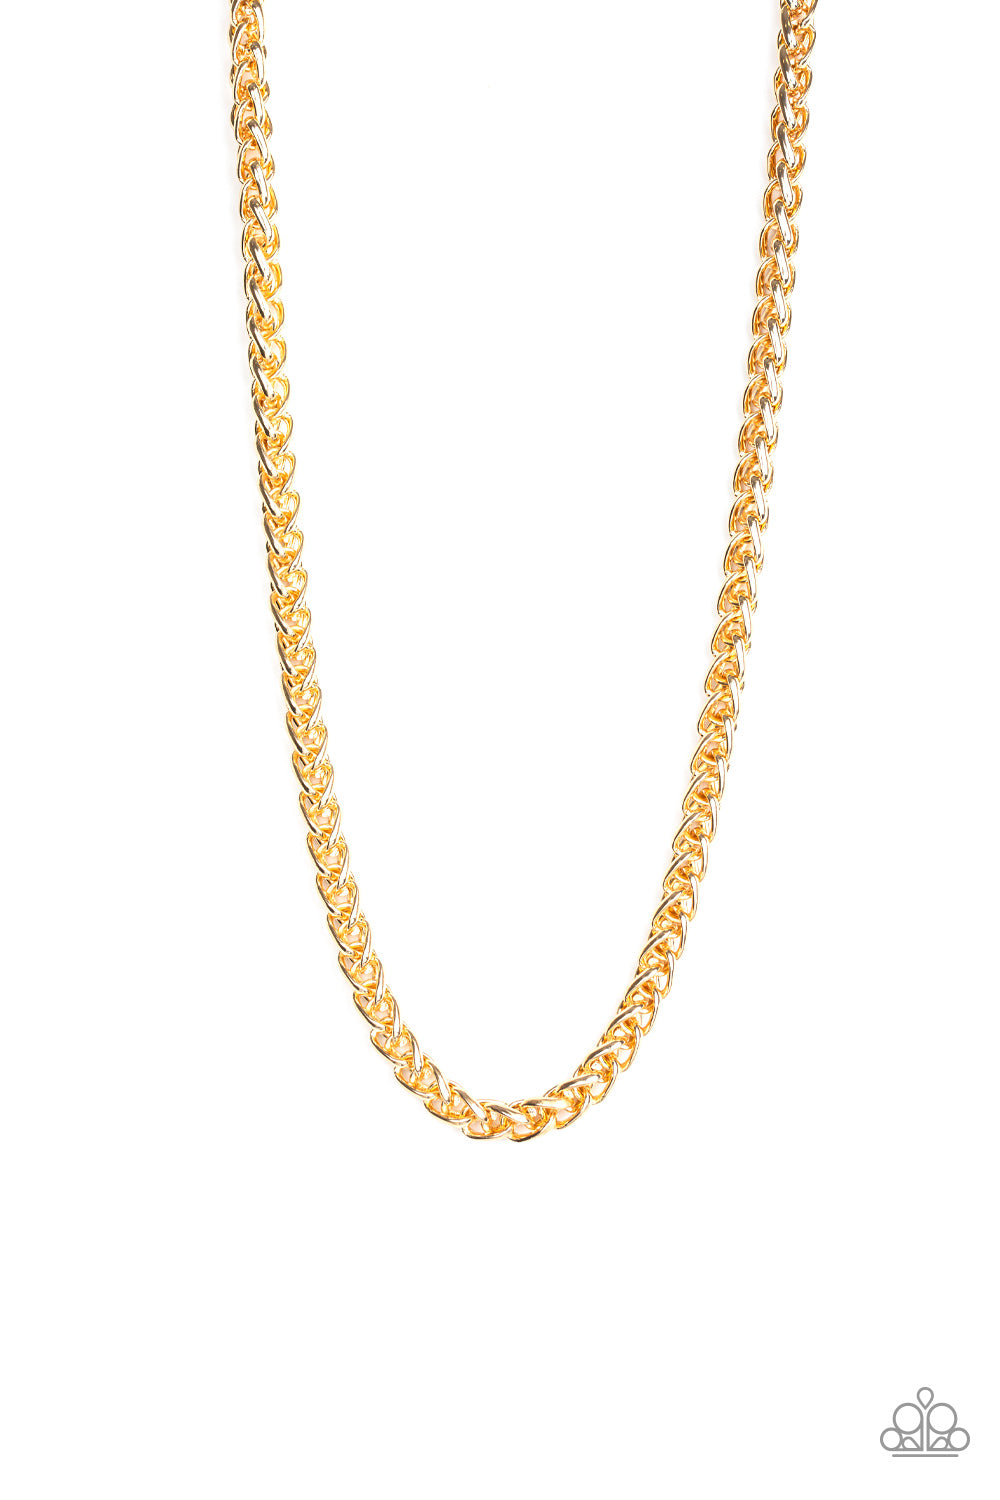 Big Talker - Gold Men's Necklace - Princess Glam Shop